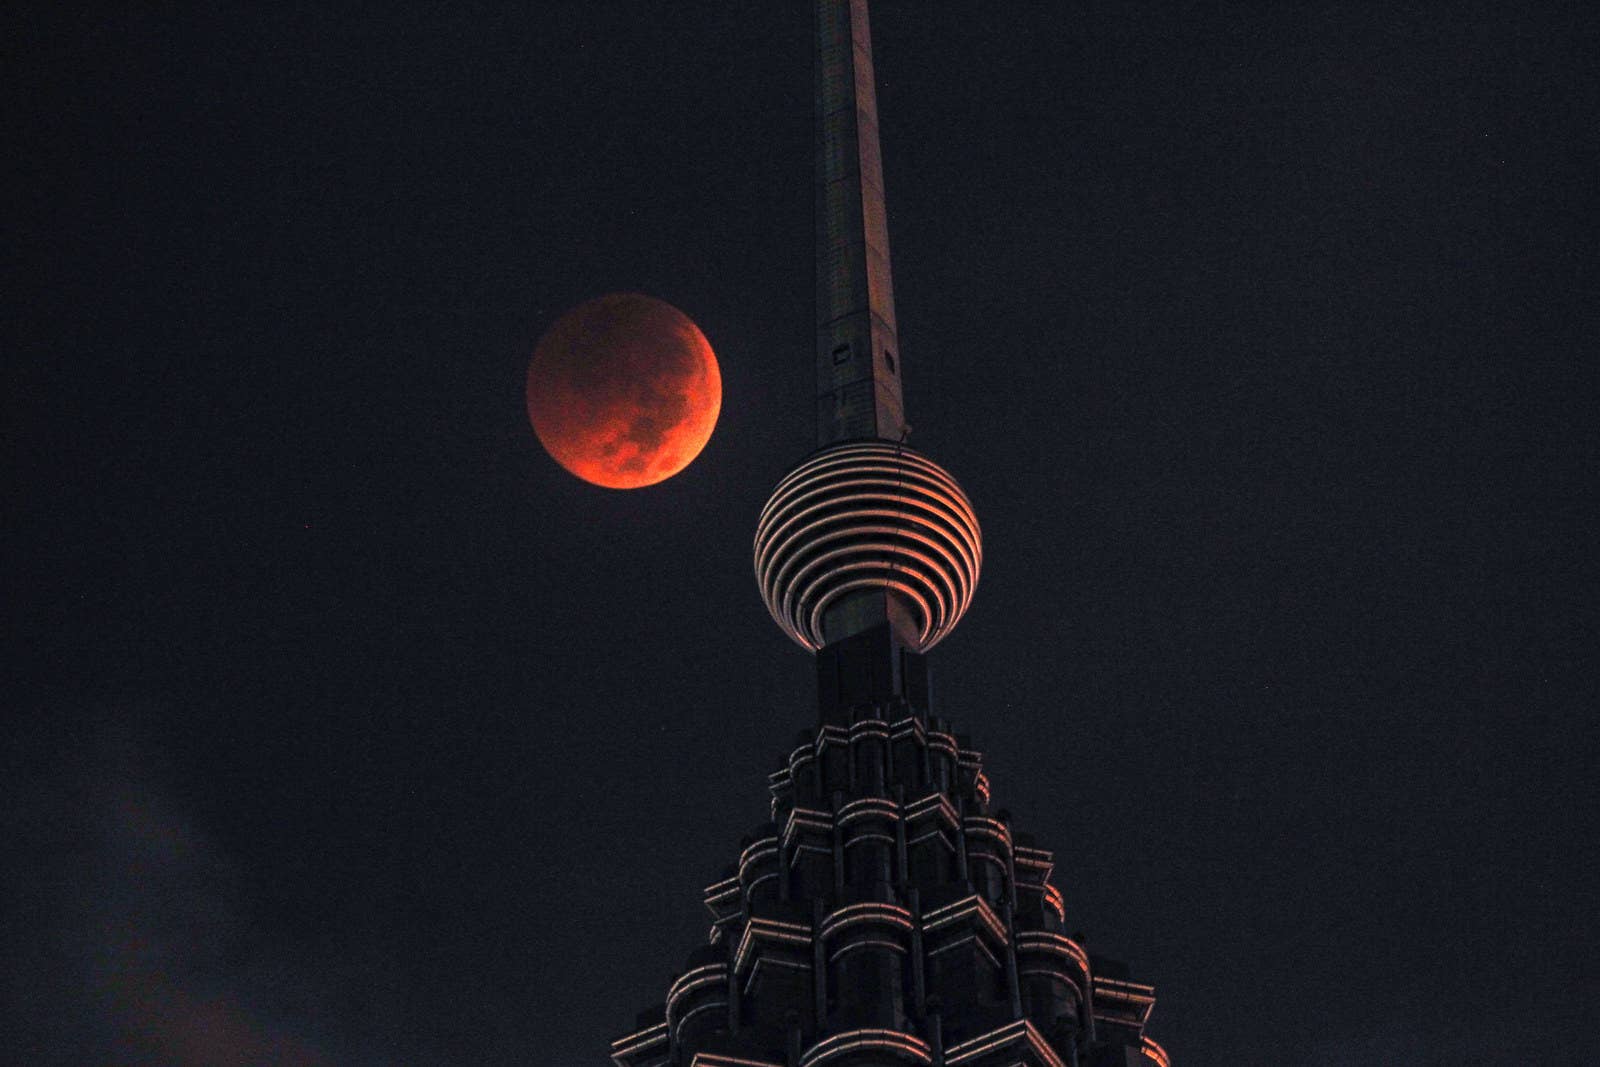 The blood moon is seen above Petronas Twin Tower in Kuala Lumpur, Malaysia.